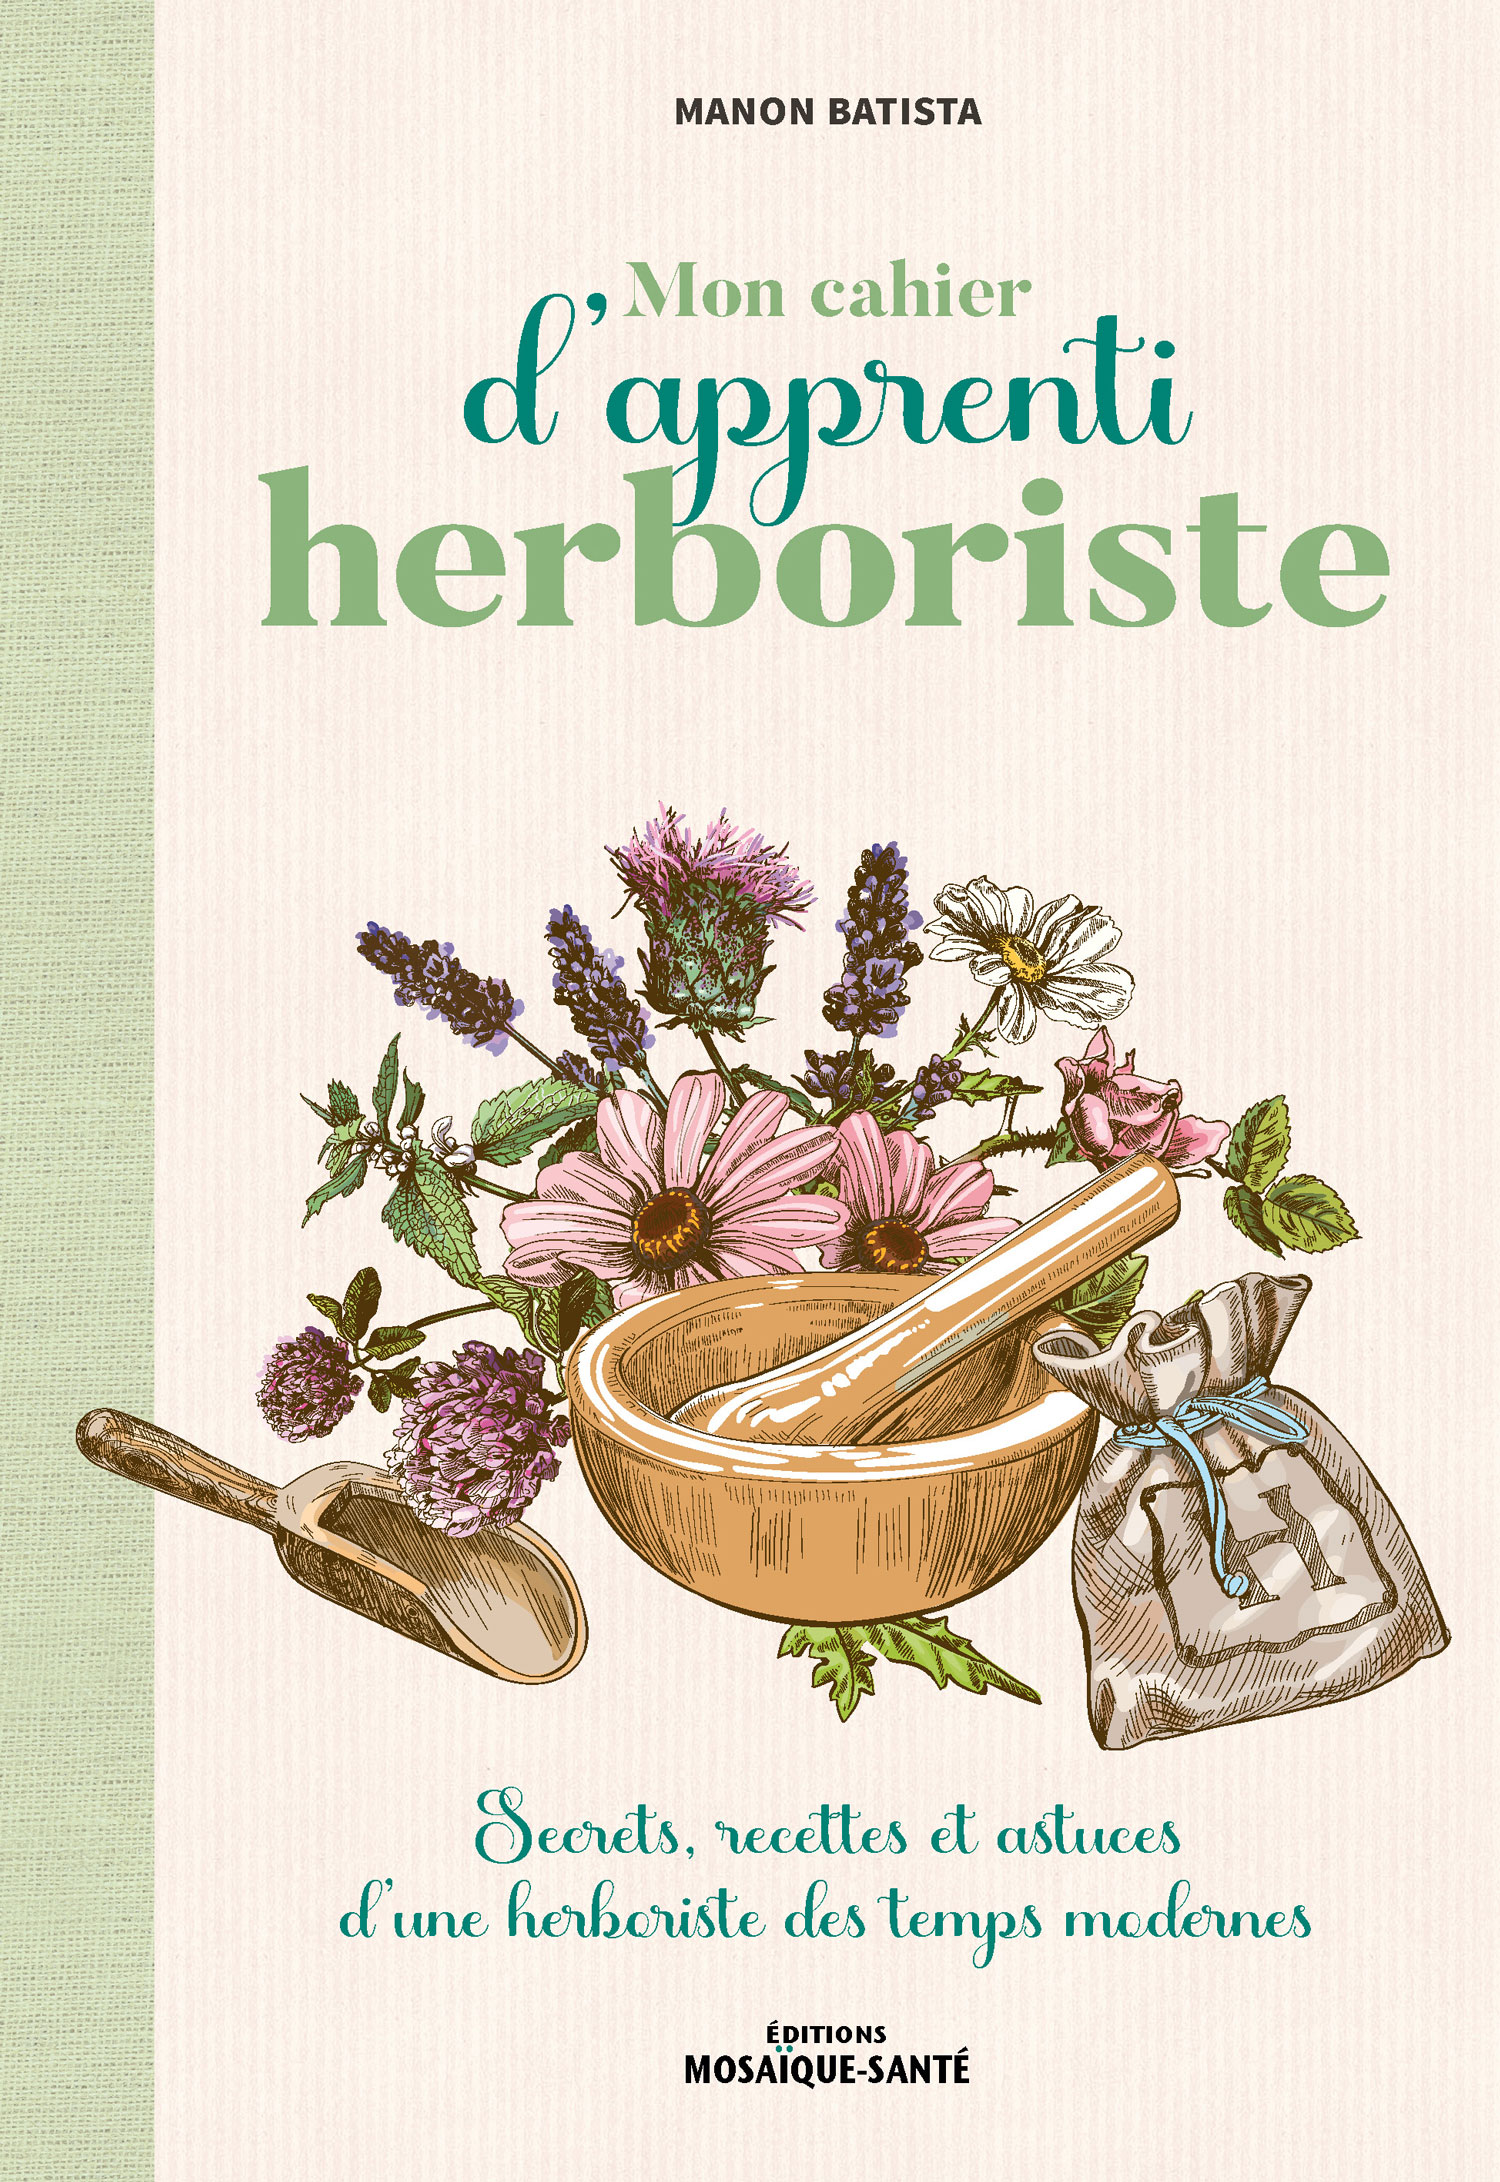 Mon cahier d’apprenti herboriste - Secrets, recettes et astuces d’une herboriste des temps modernes - Manon Batista